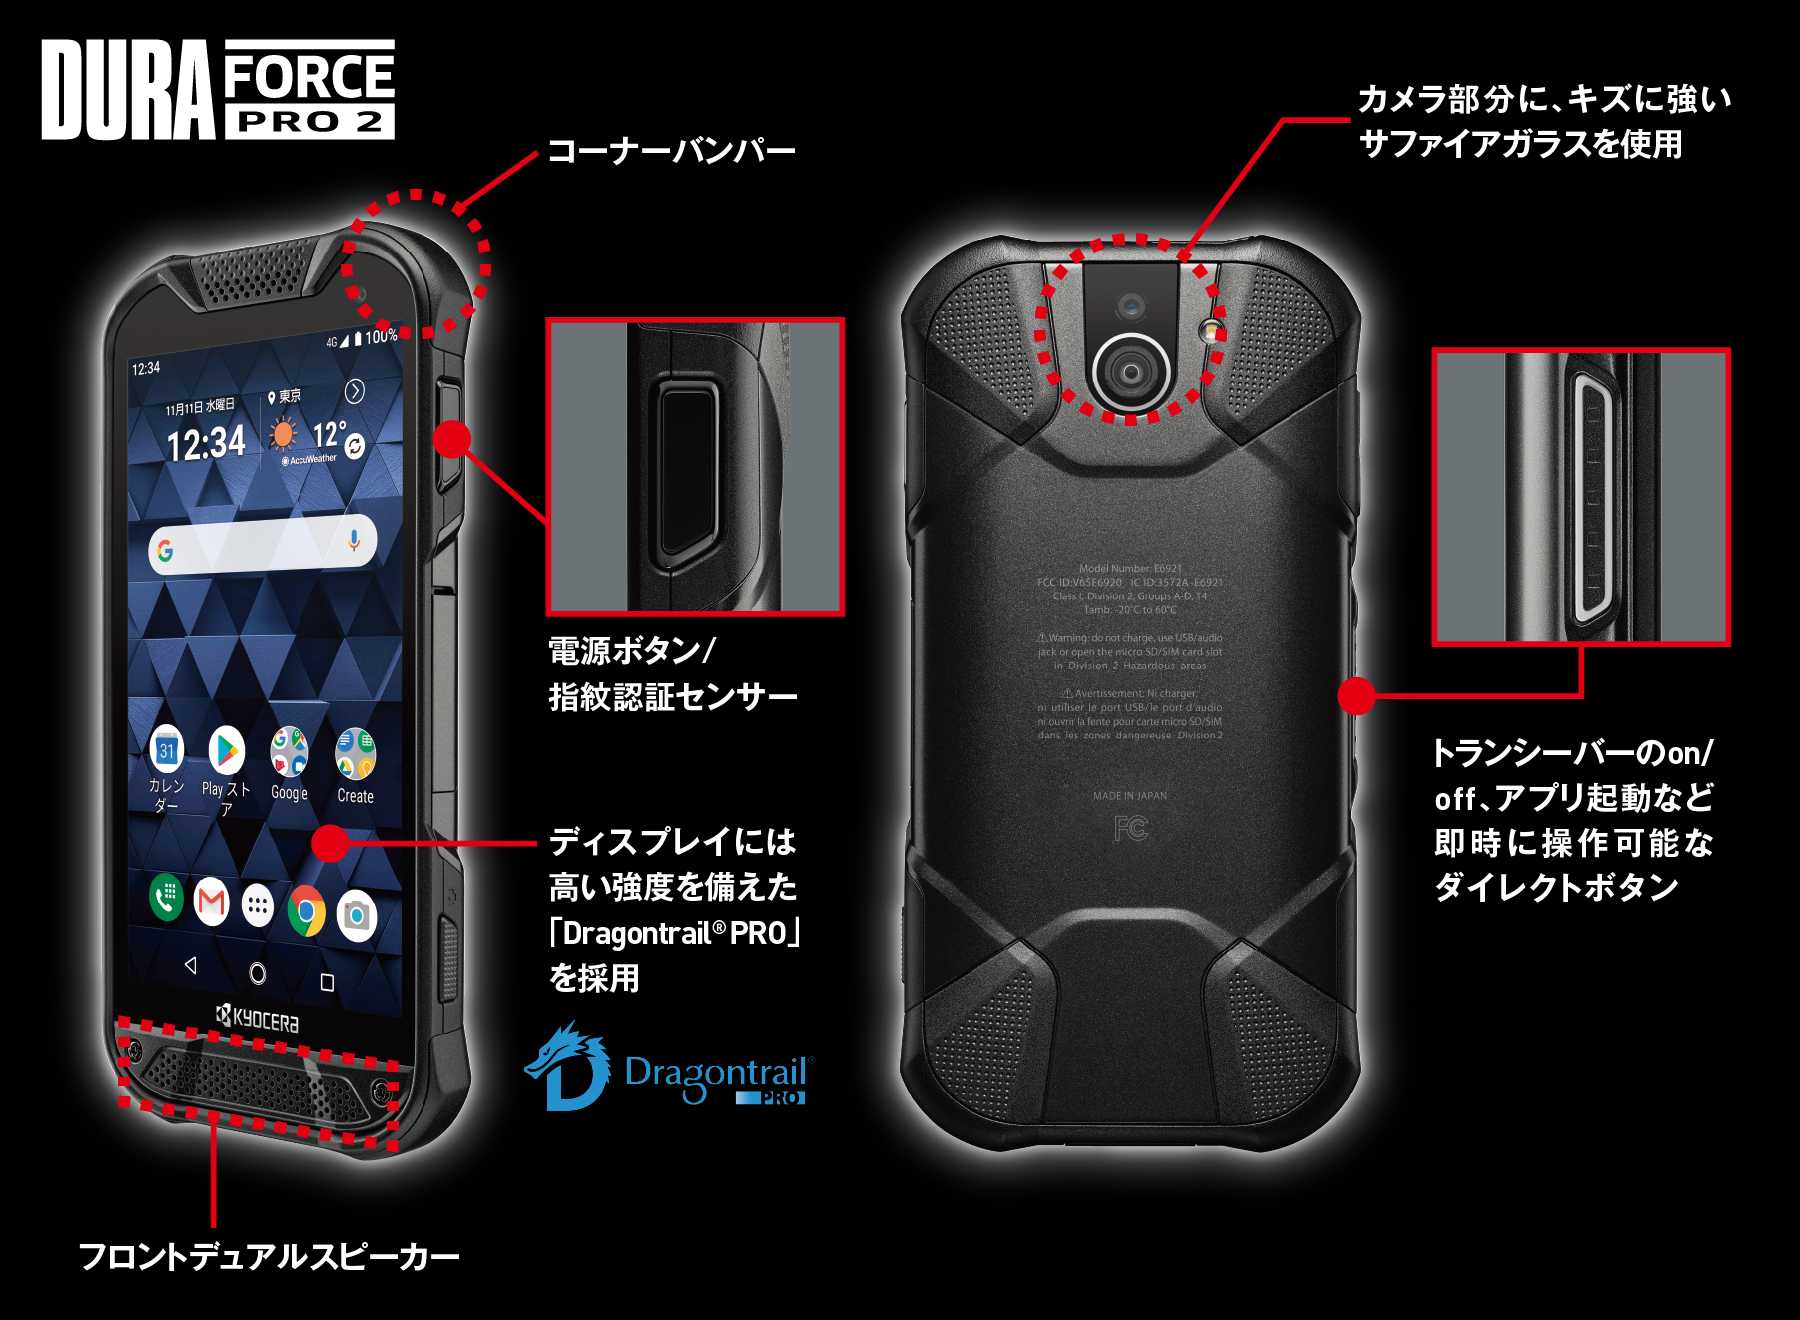 DuraForce PRO 2 | 製品情報 | スマートフォン・携帯電話 | 京セラ